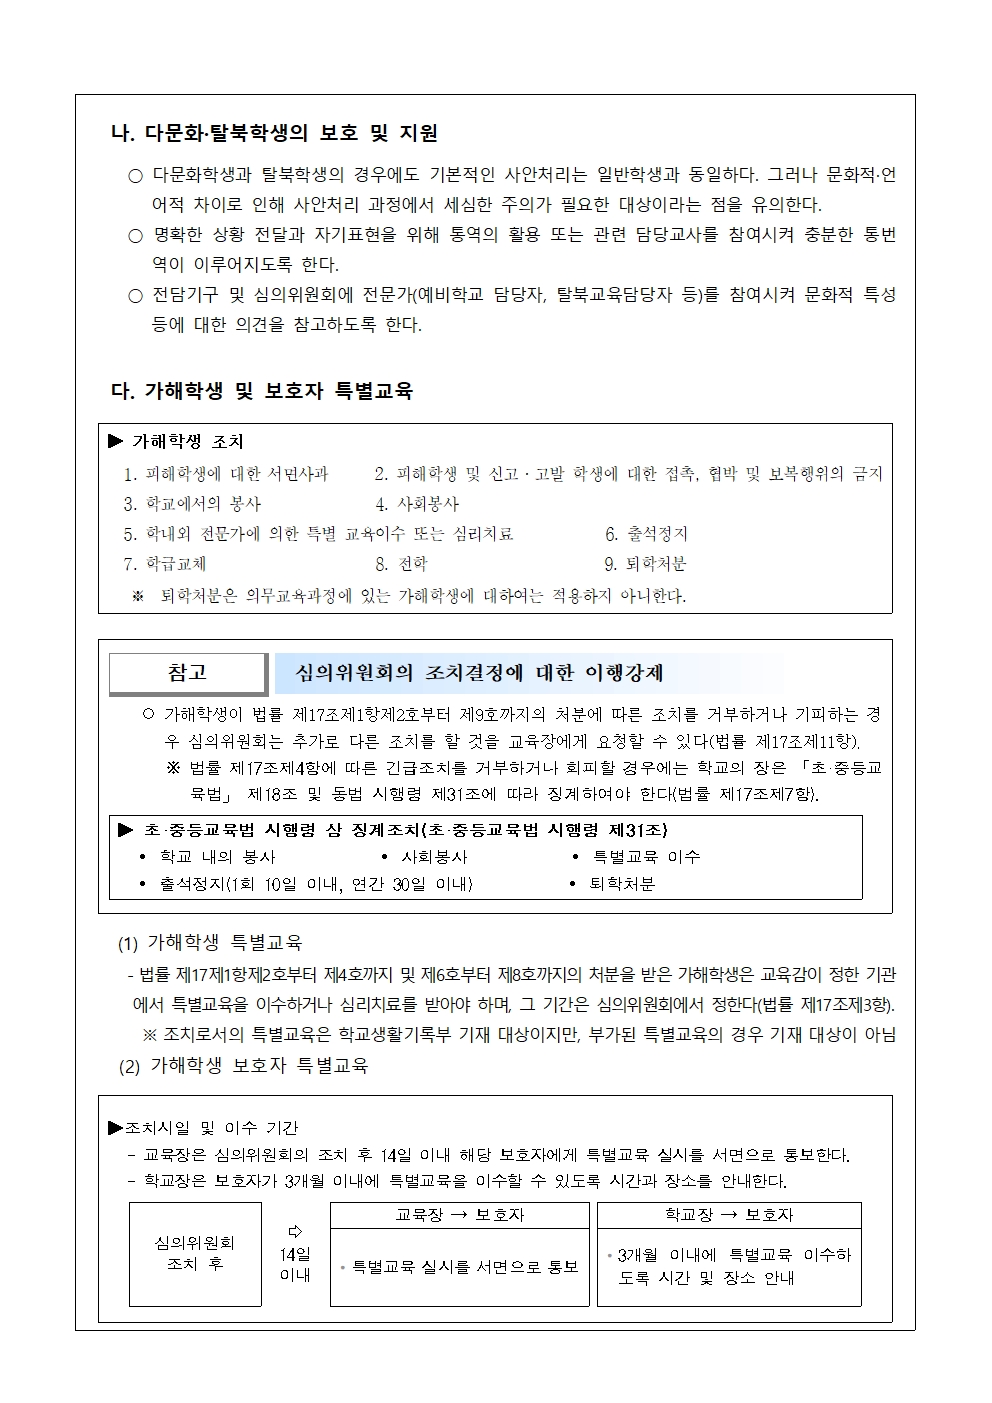 가정통신문 2022-53호 학부모 대상 학교폭력 예방교육005